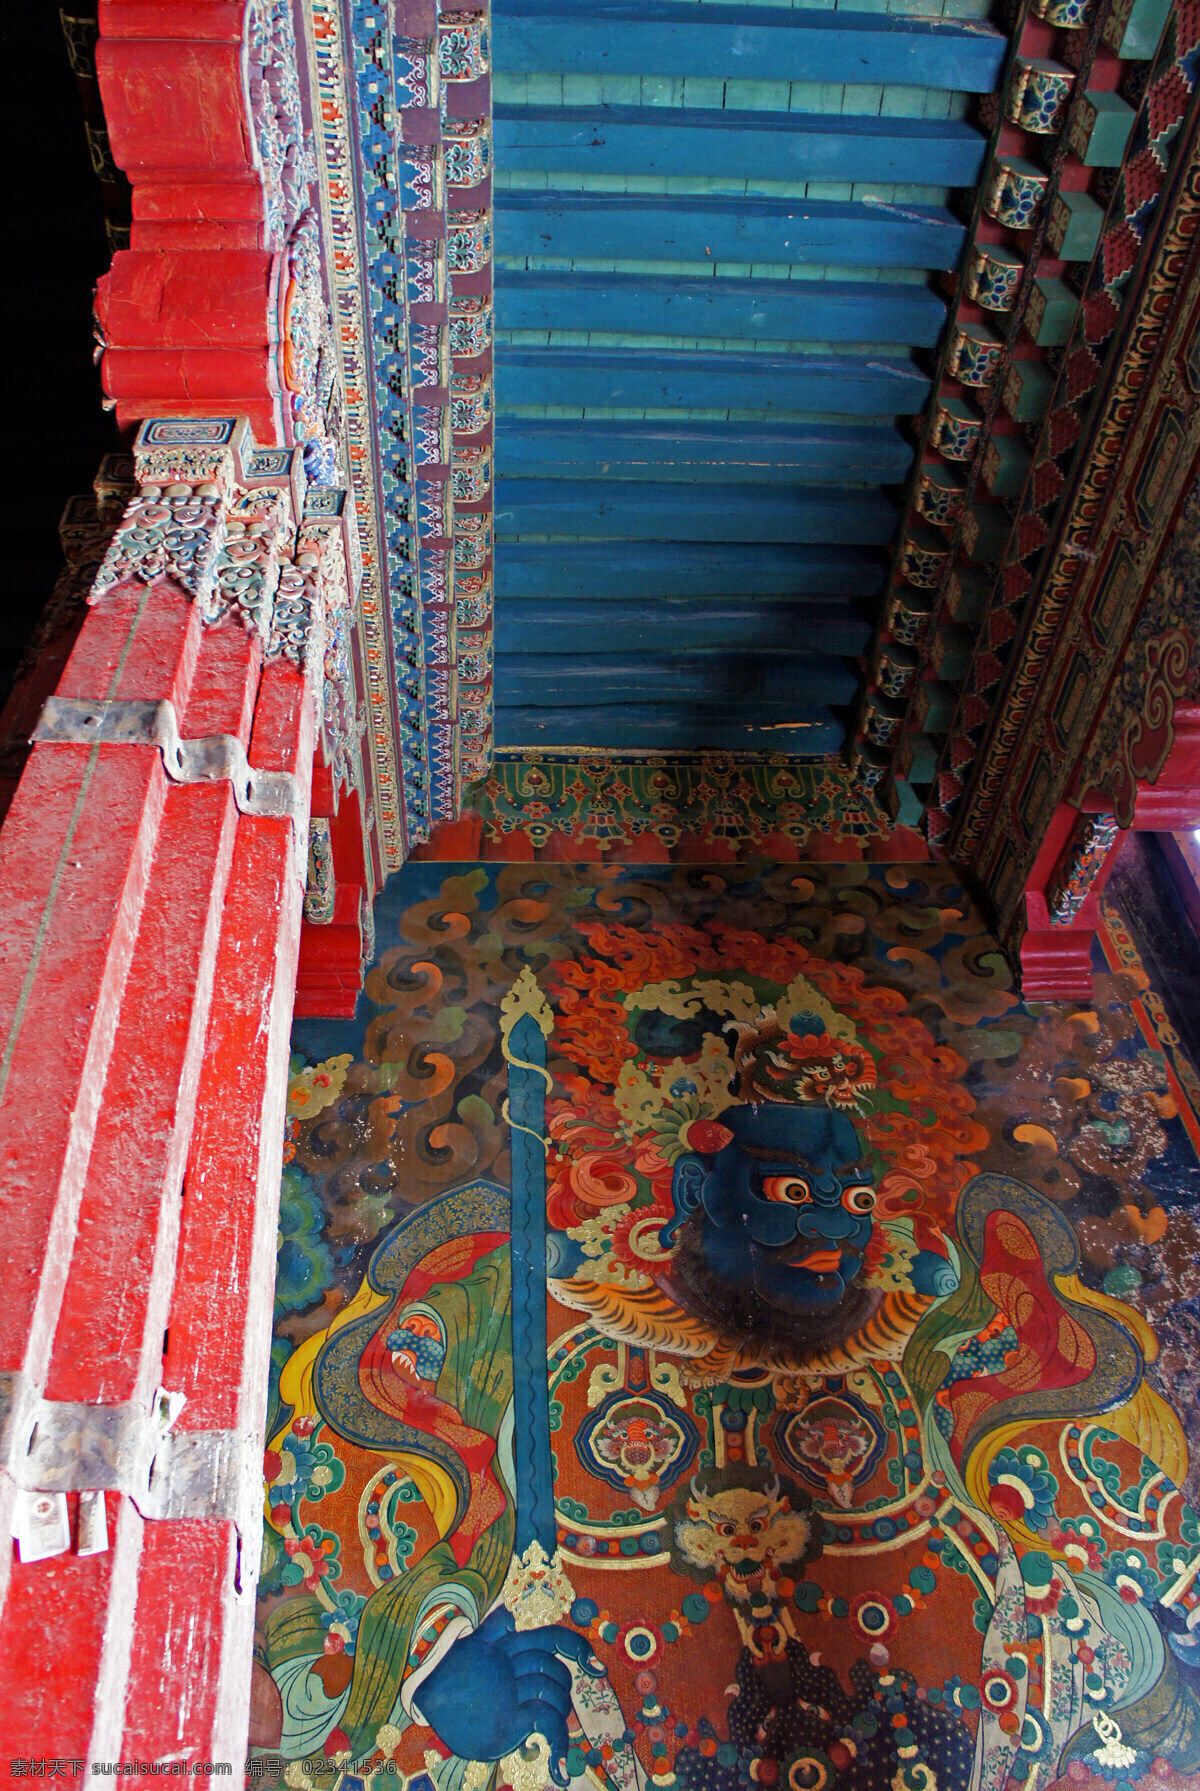 西藏 布达拉宫 古建筑 喇嘛庙 喇嘛学府 遗迹 宫殿 天空 西藏旅游 旅游摄影 国内旅游